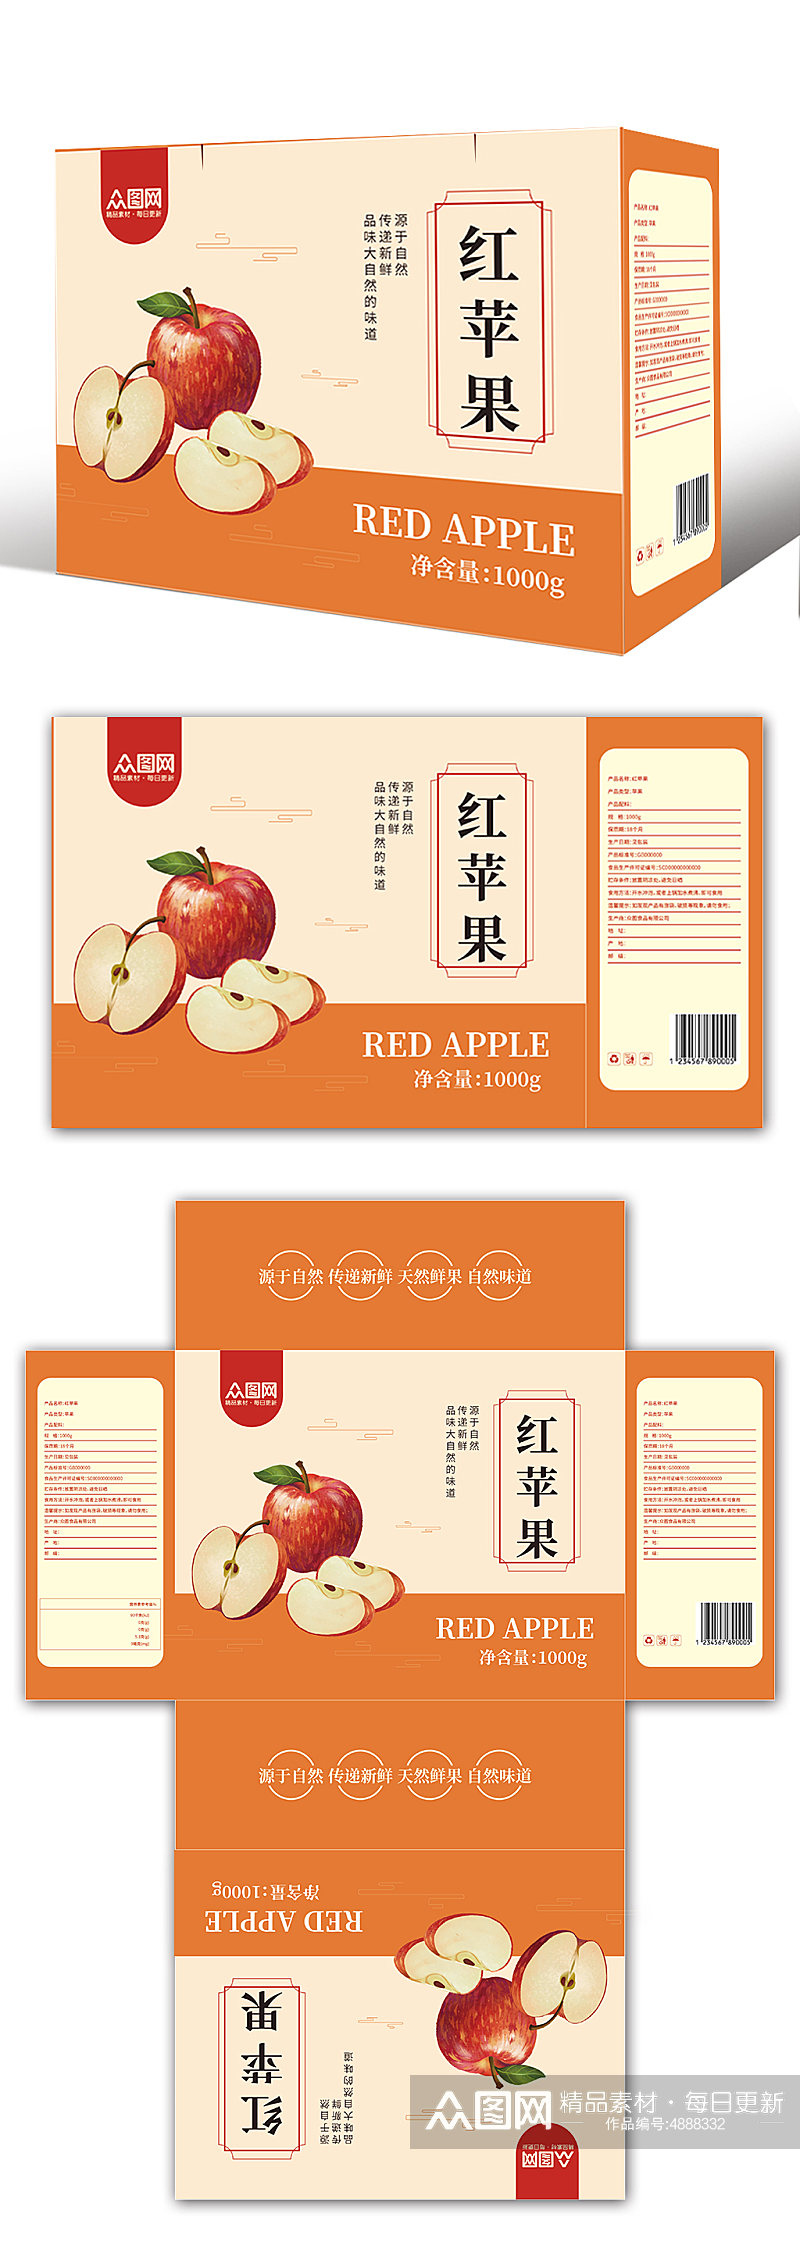 农产品苹果水果包装礼盒设计素材